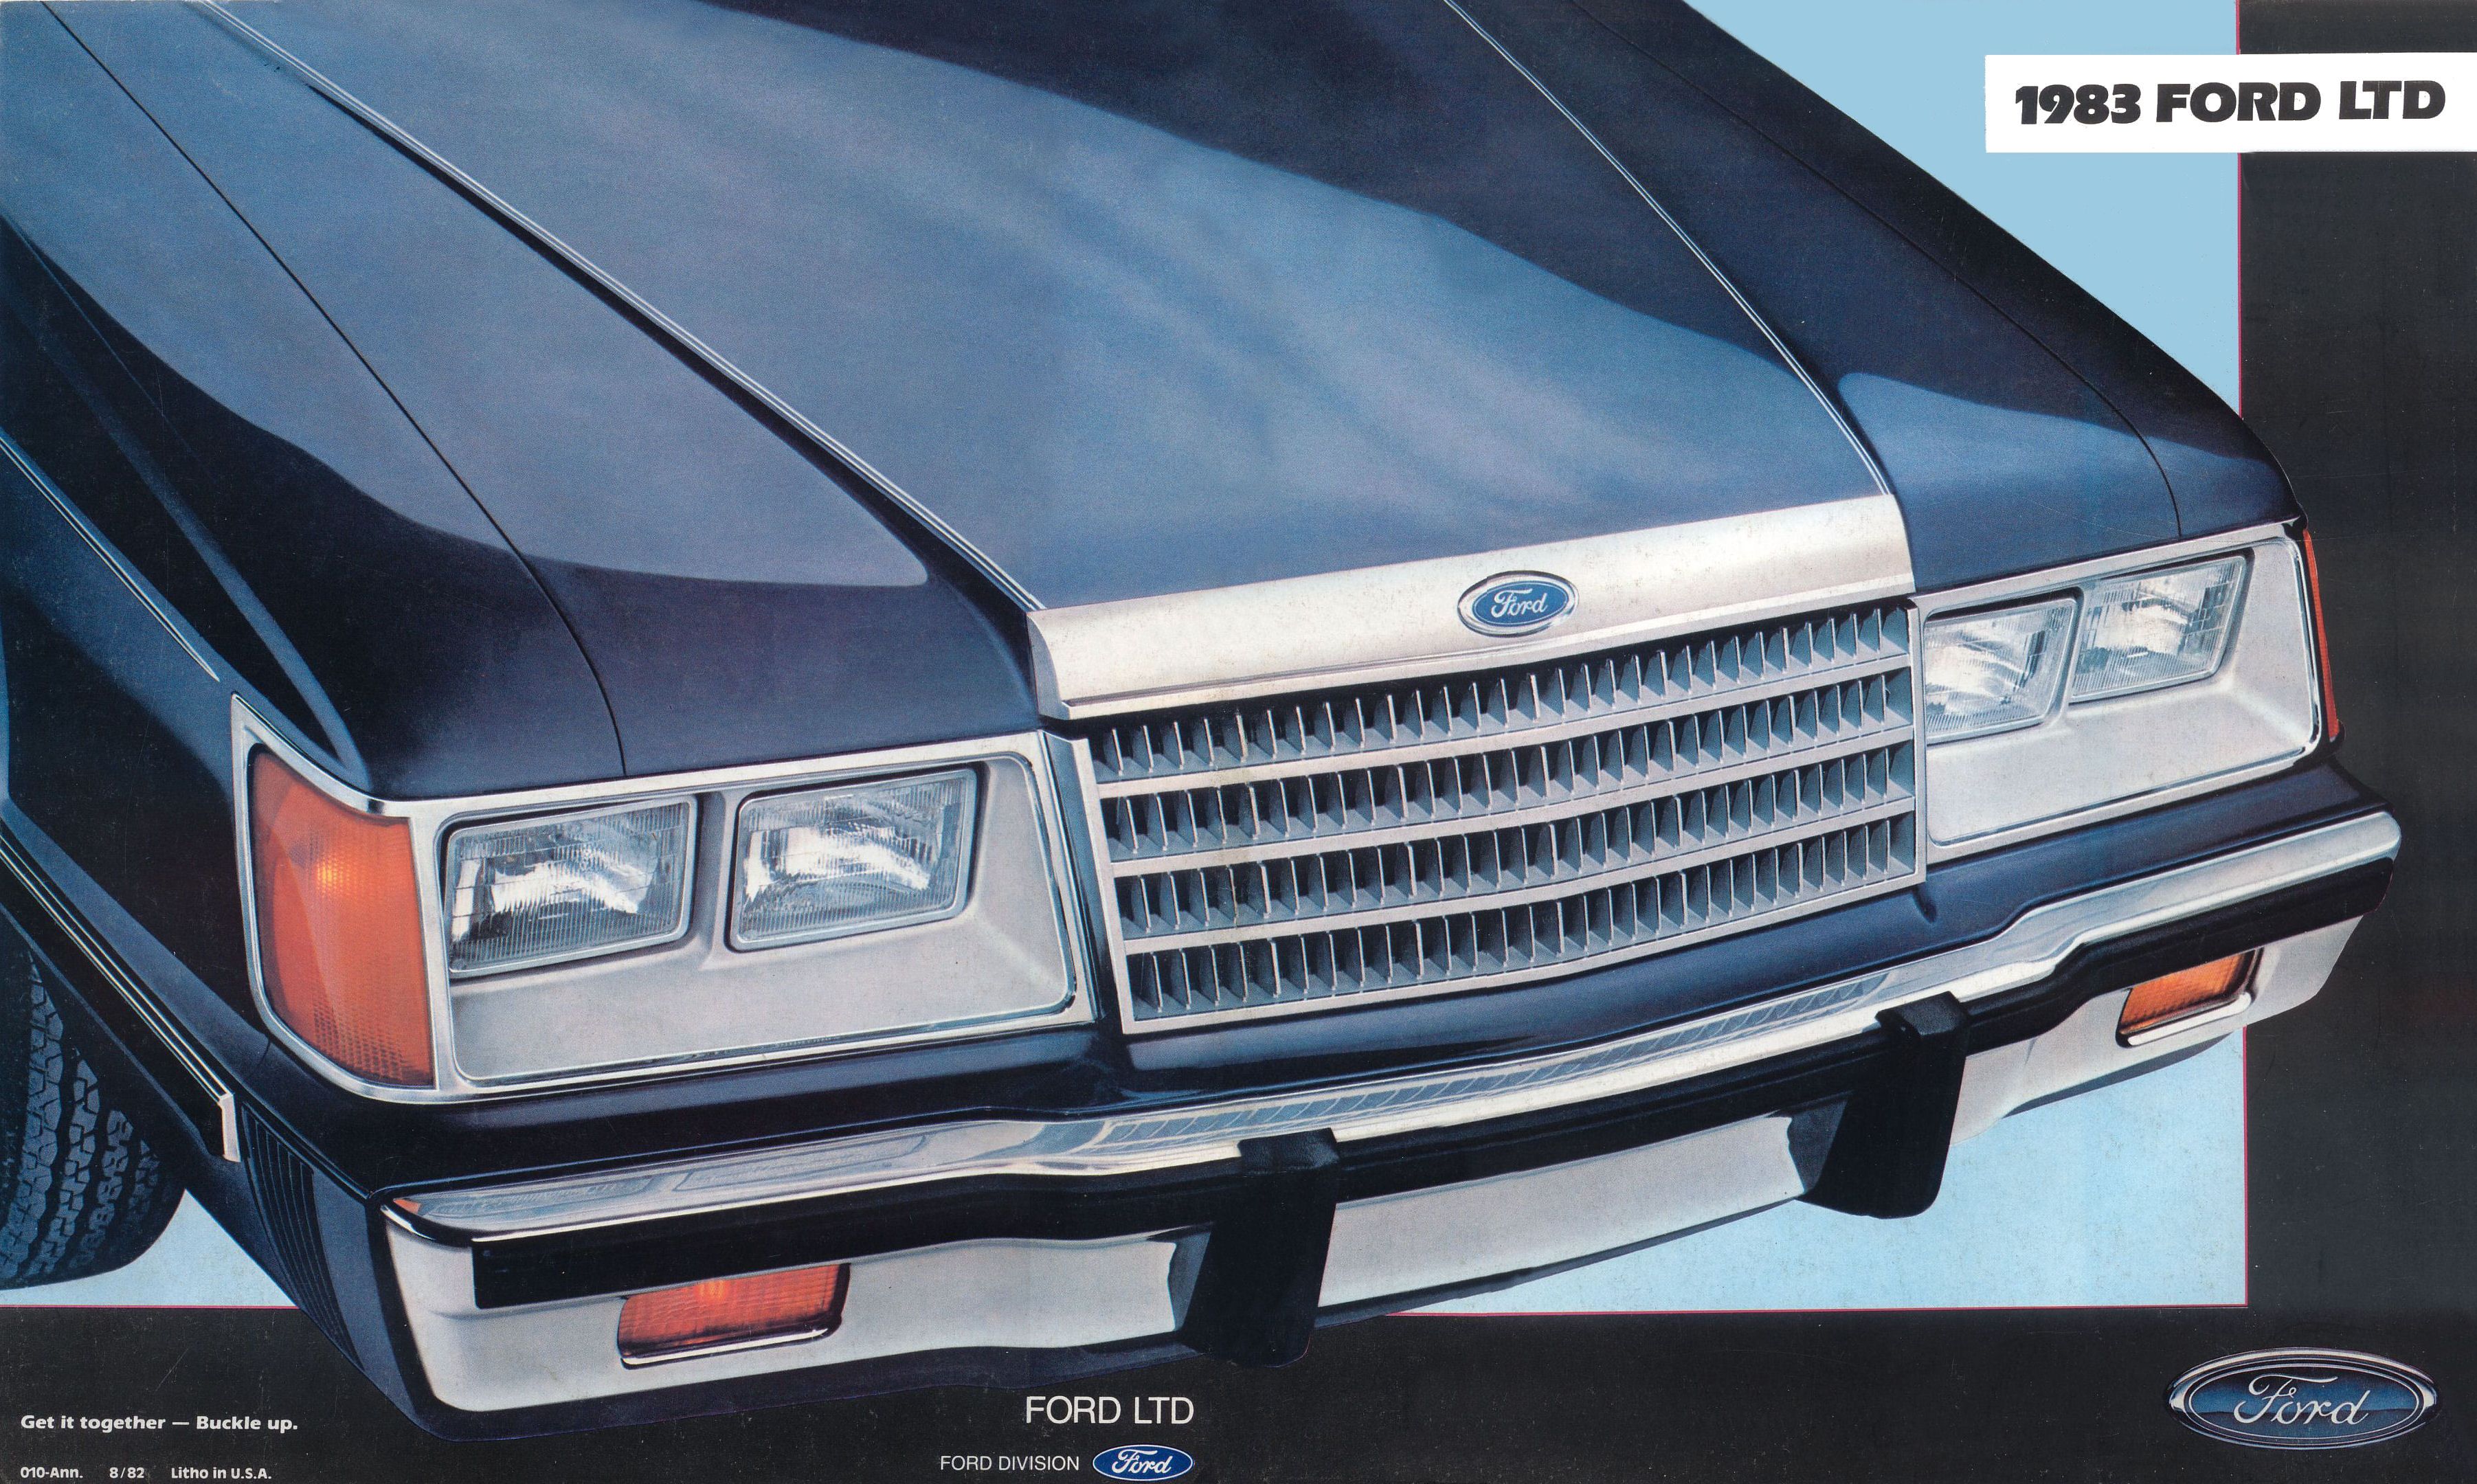 1983 Ford LTD Brochure